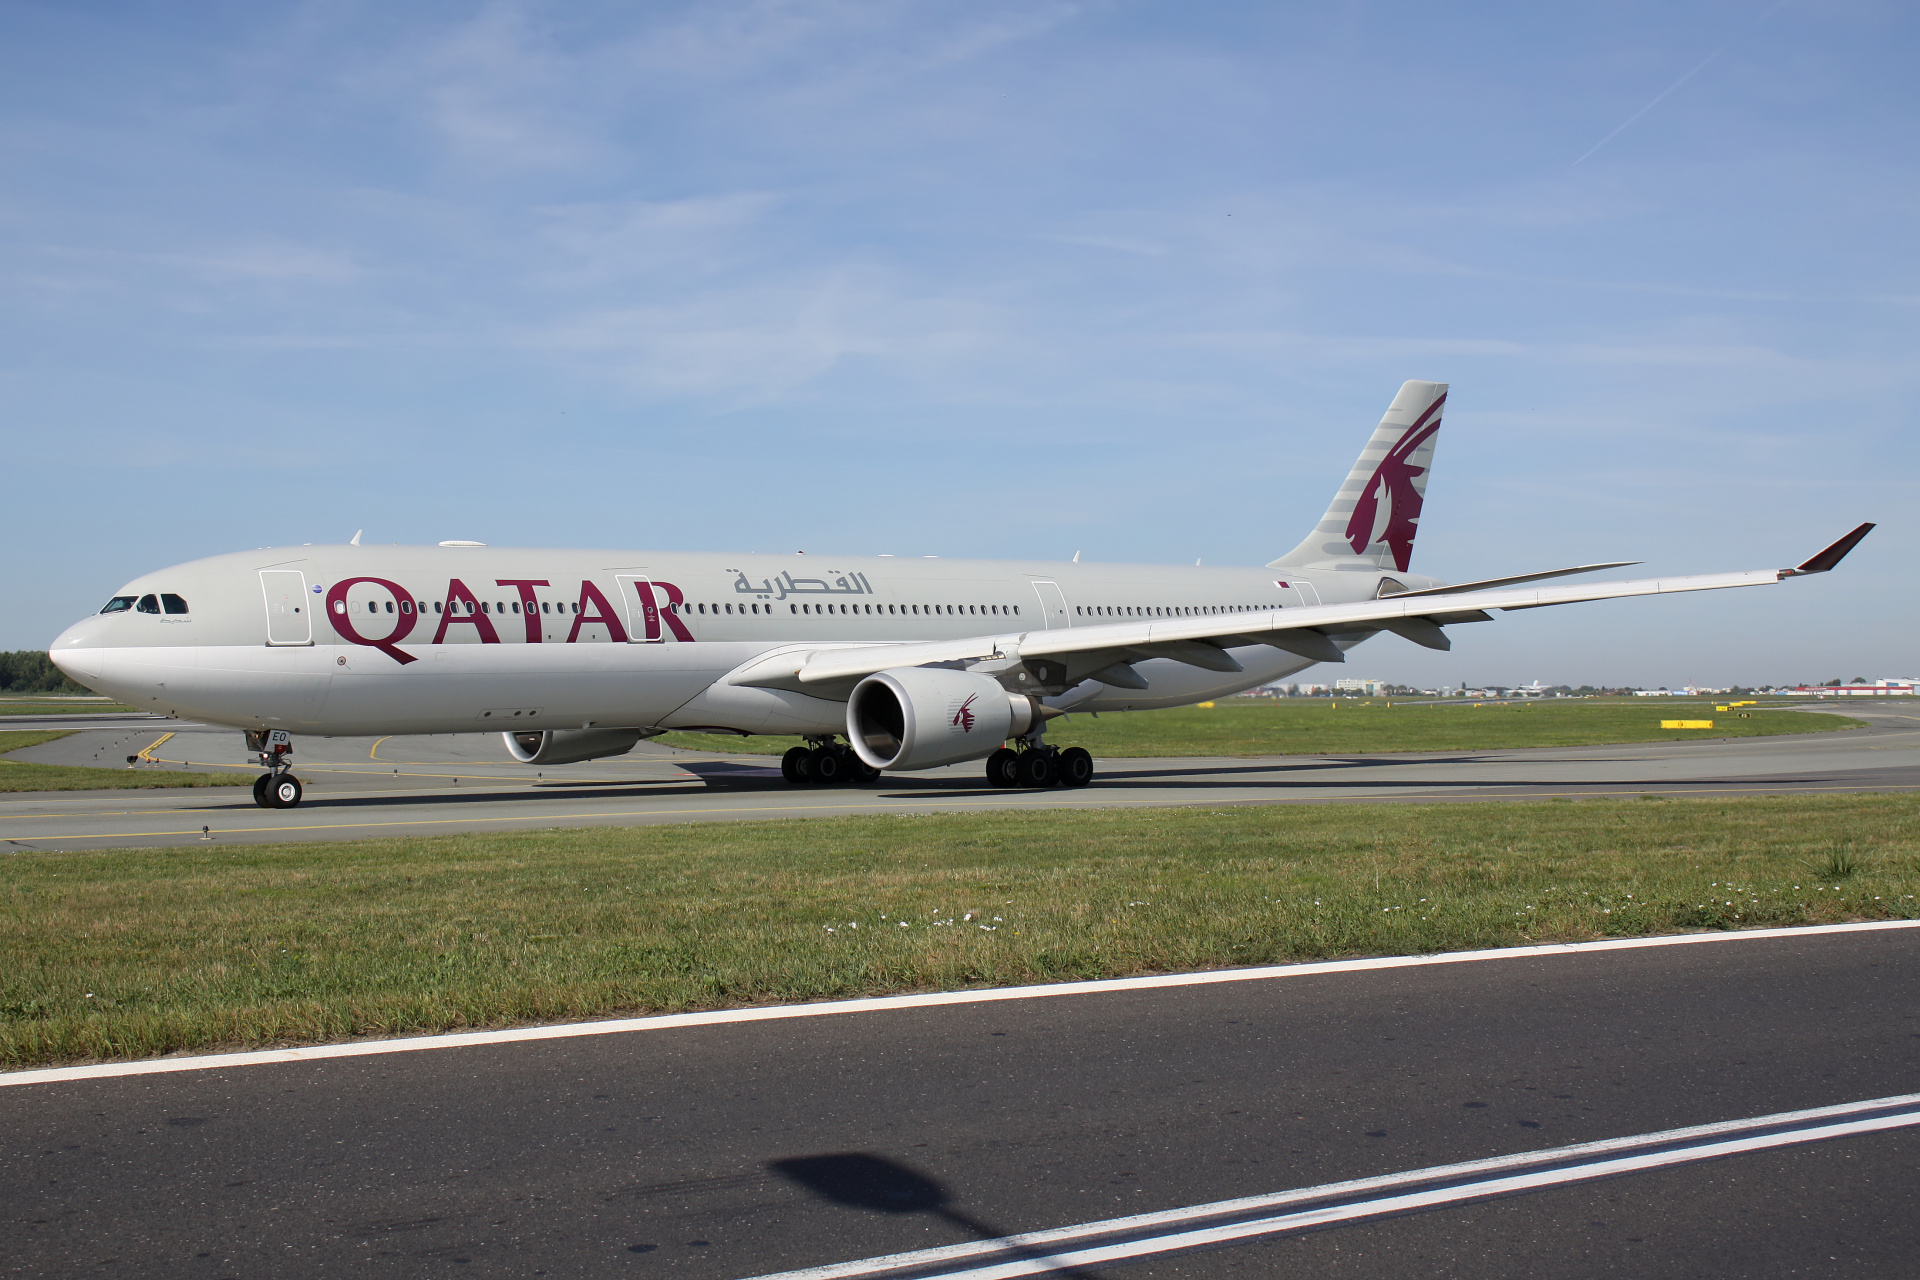 A7-AEO (Aircraft » EPWA Spotting » Airbus A330-300 » Qatar Airways)